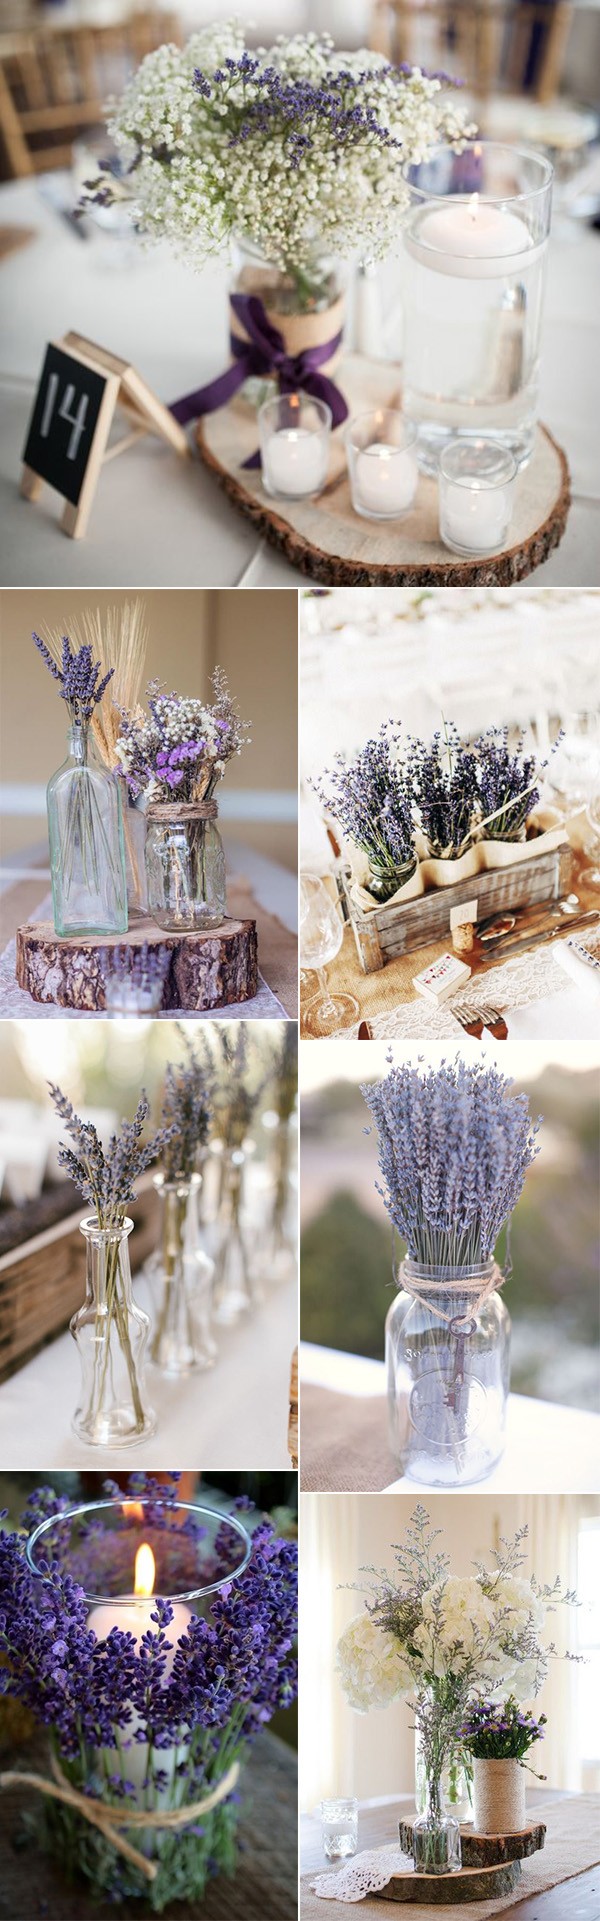 chic lavender wedding centerpiece ideas